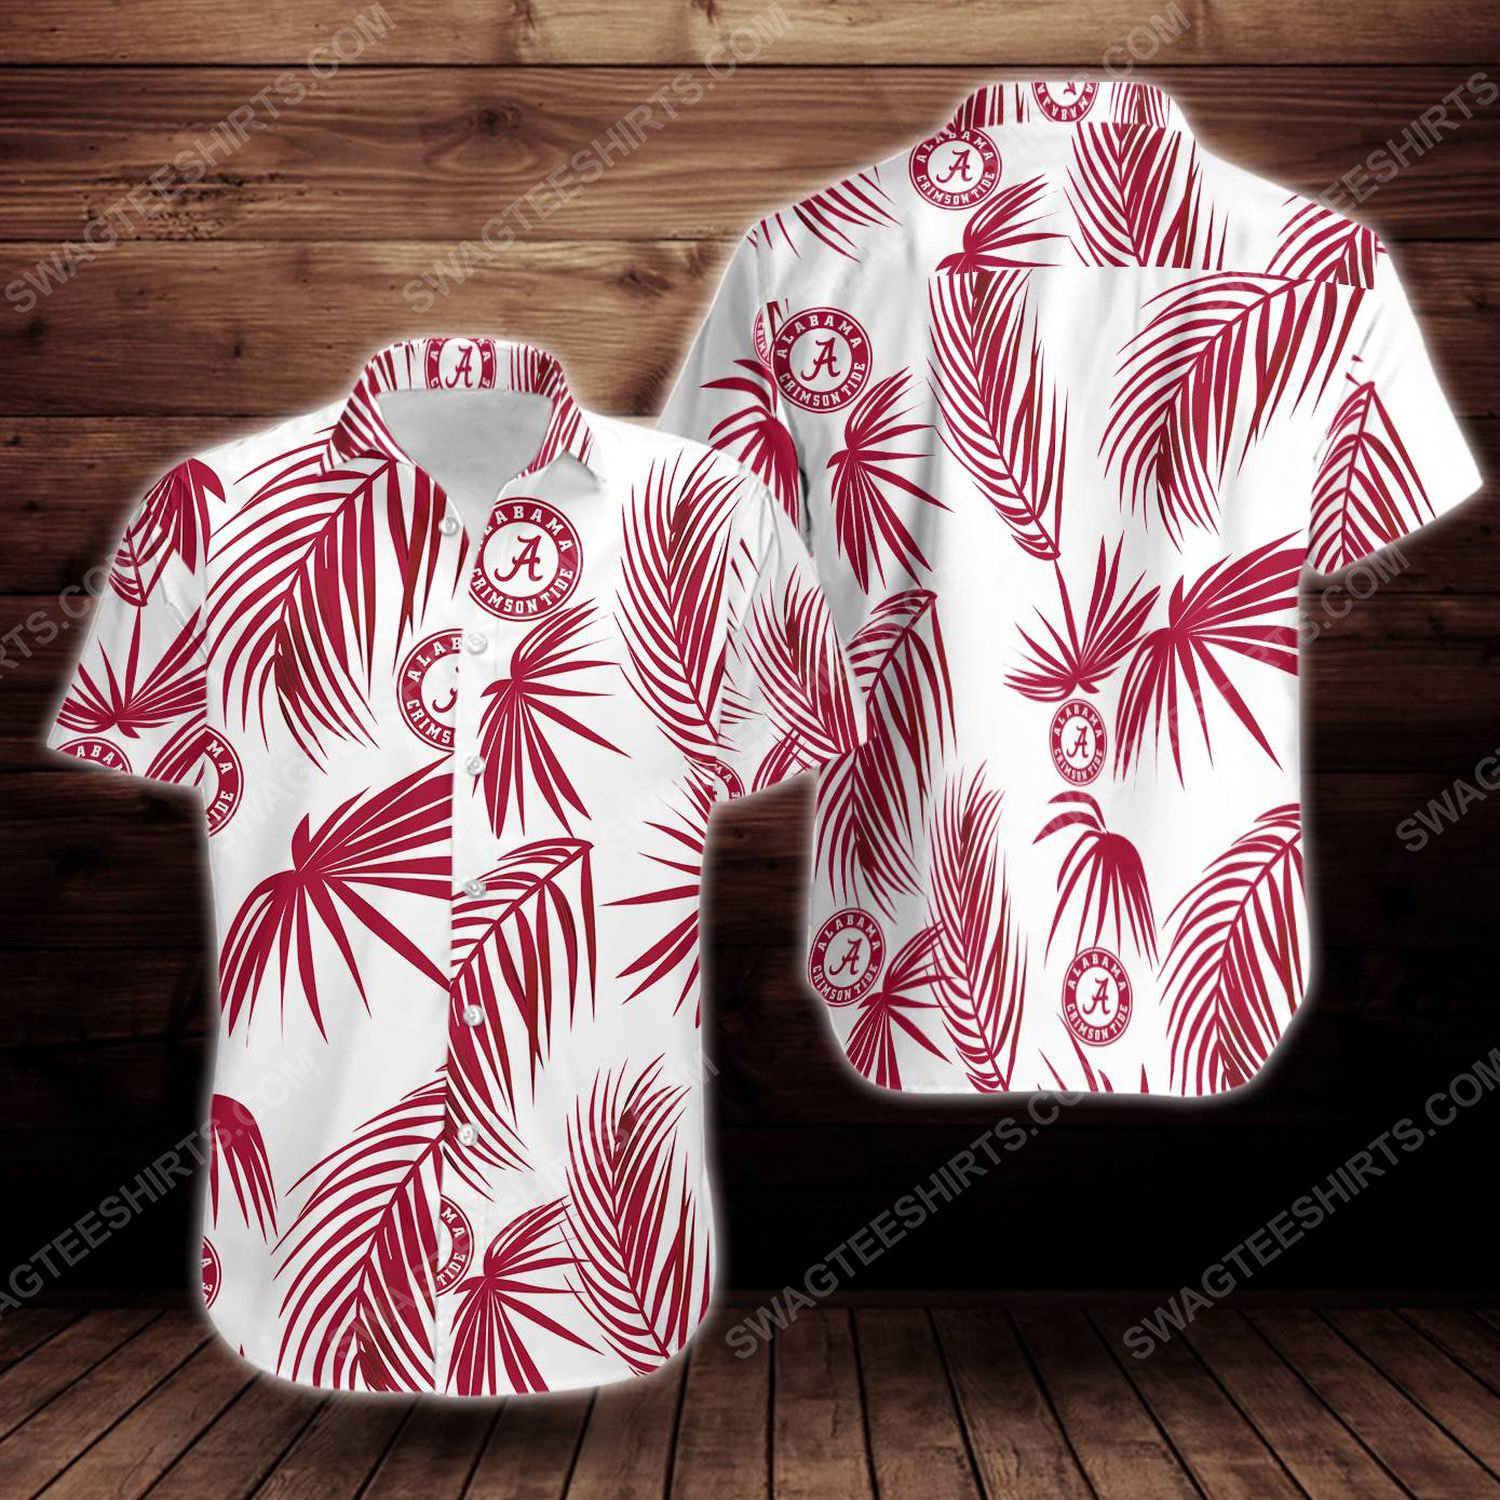 [special edition] Alabama crimson tide football short sleeve hawaiian shirt – maria